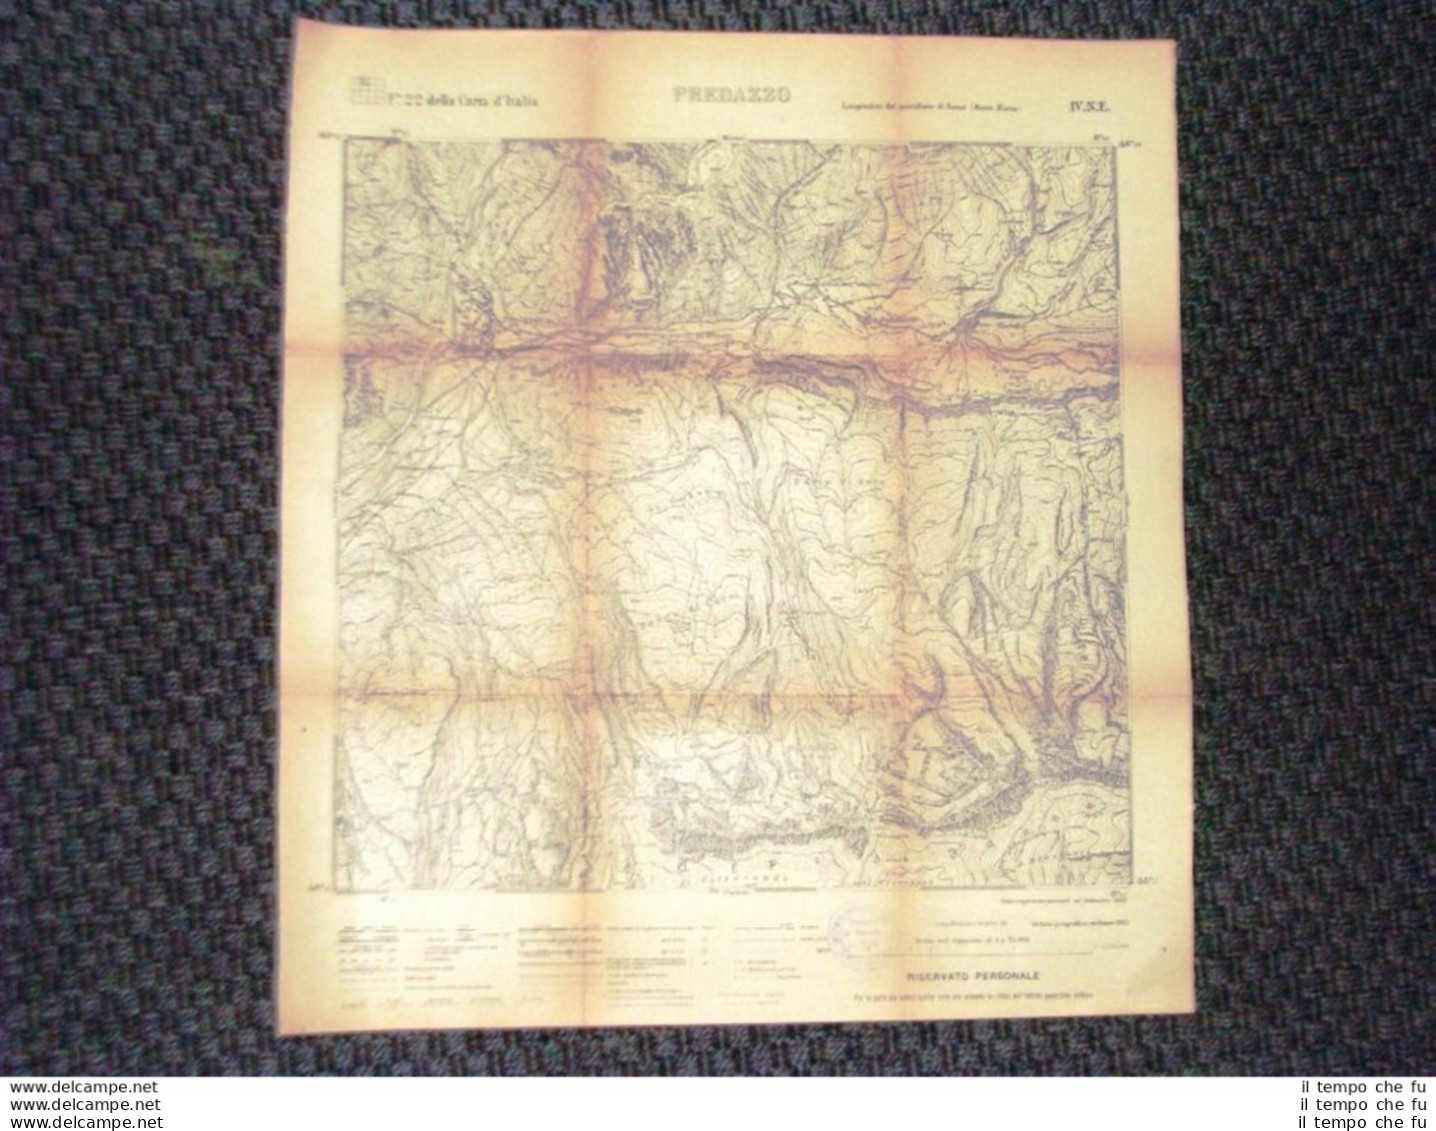 Grande Carta Topografica Predazzo O Pardatsch Trentino Dettagliatissima I.G.M. - Geographical Maps